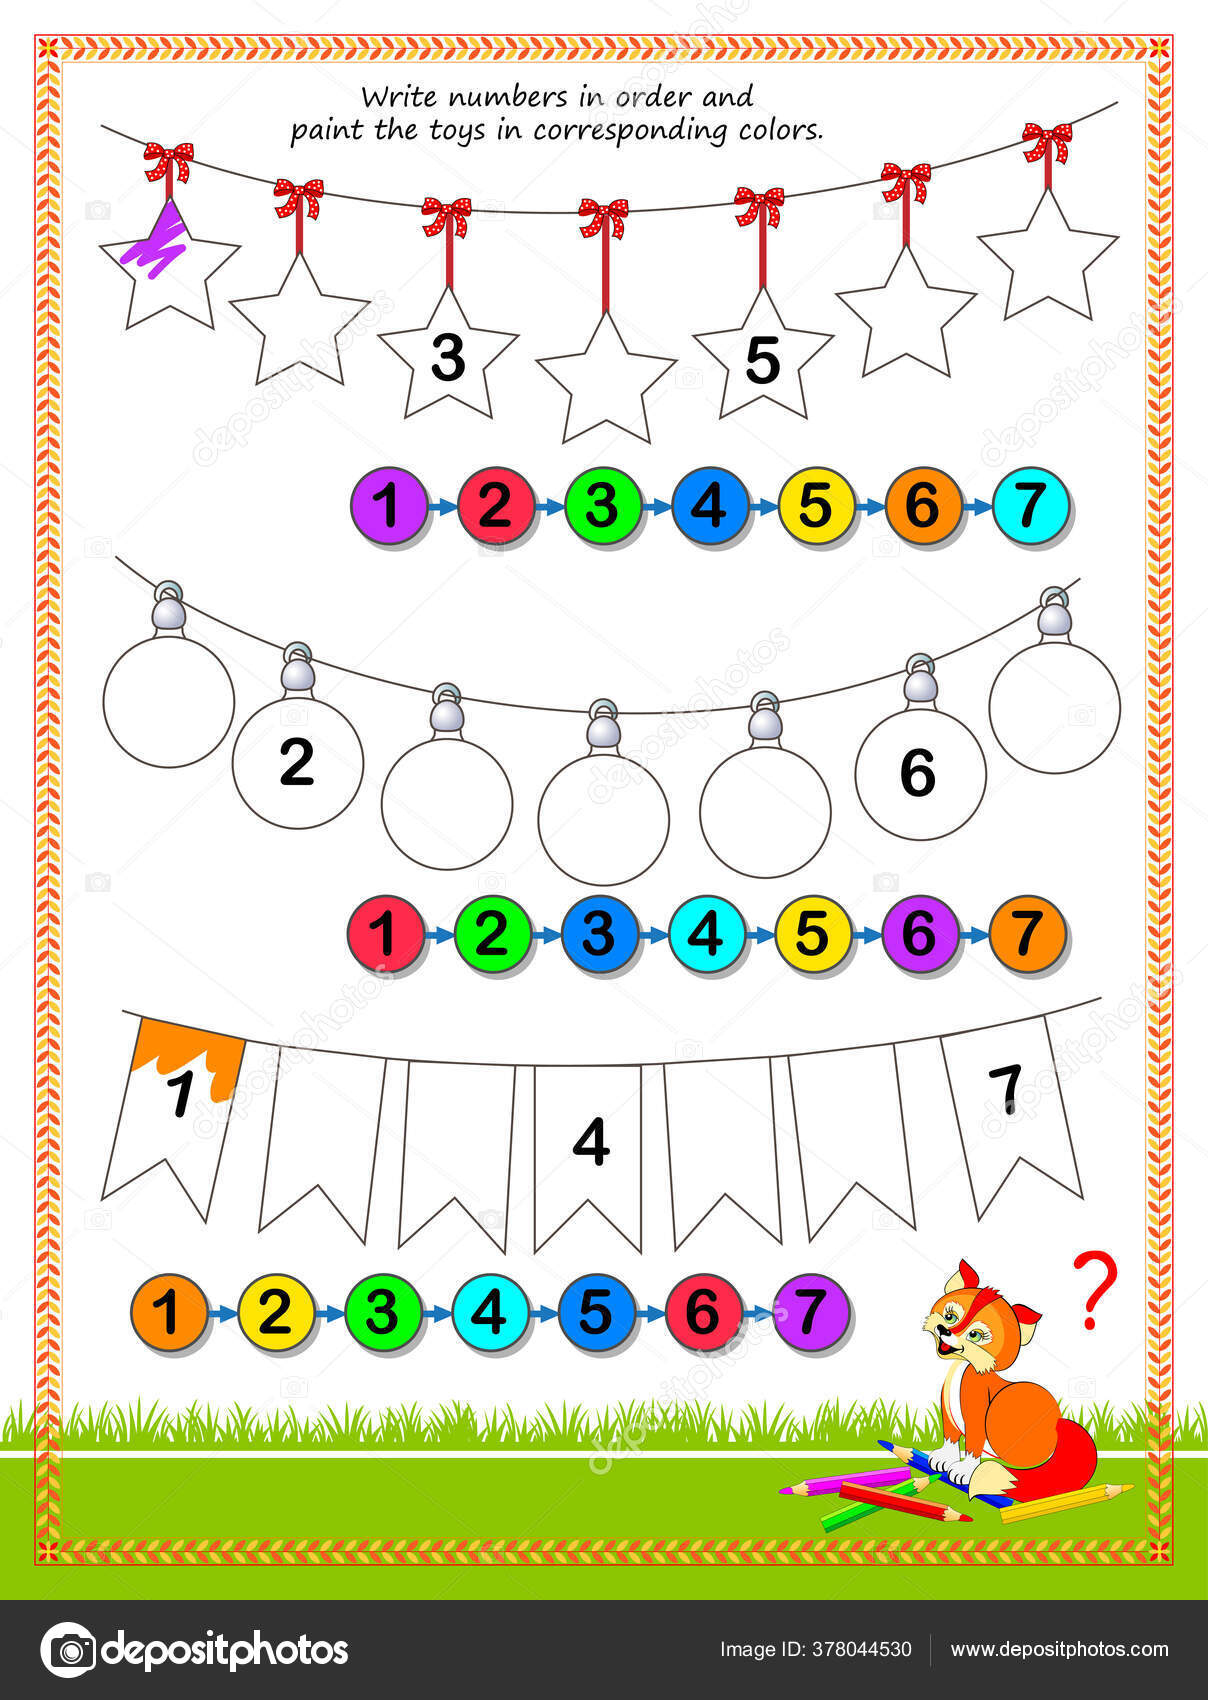 Jogo de cores por números para crianças página para colorir com um